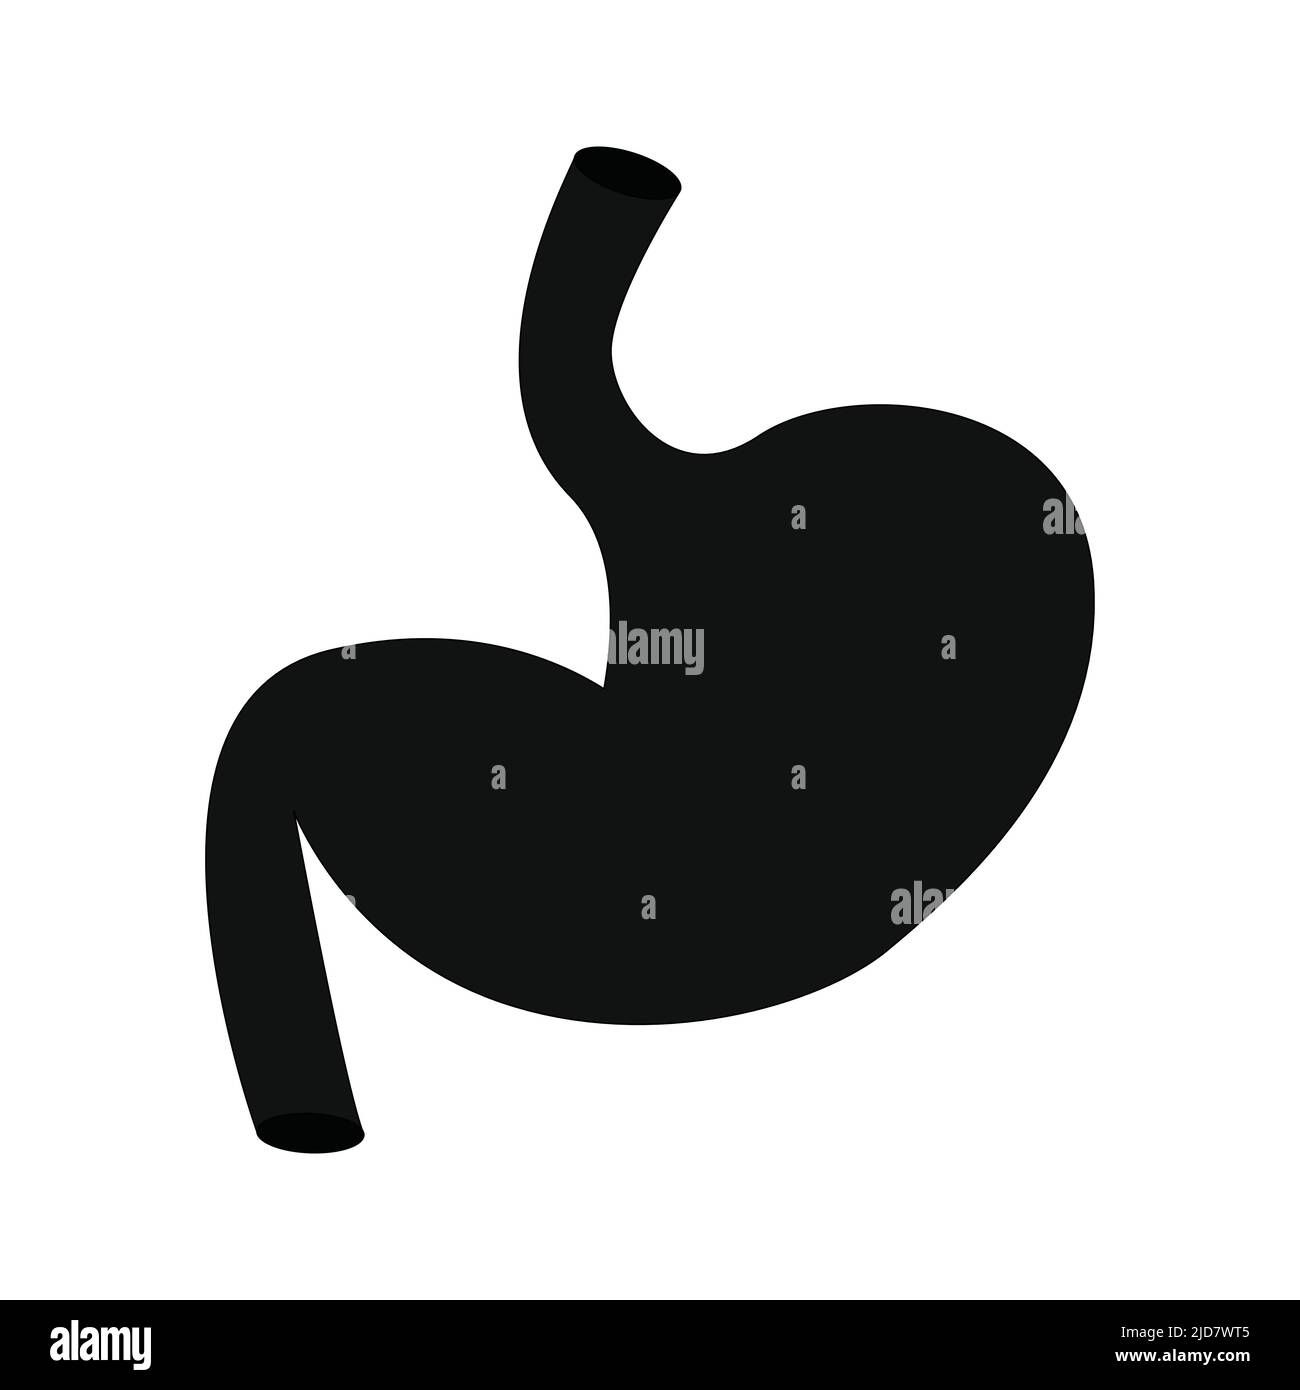 Icona dello stomaco umano. Organo interno, anatomia. Immagine di icone di cartoni animati vettoriali isolati su sfondo bianco. Sulla scienza e la medicina. Illustrazione Vettoriale